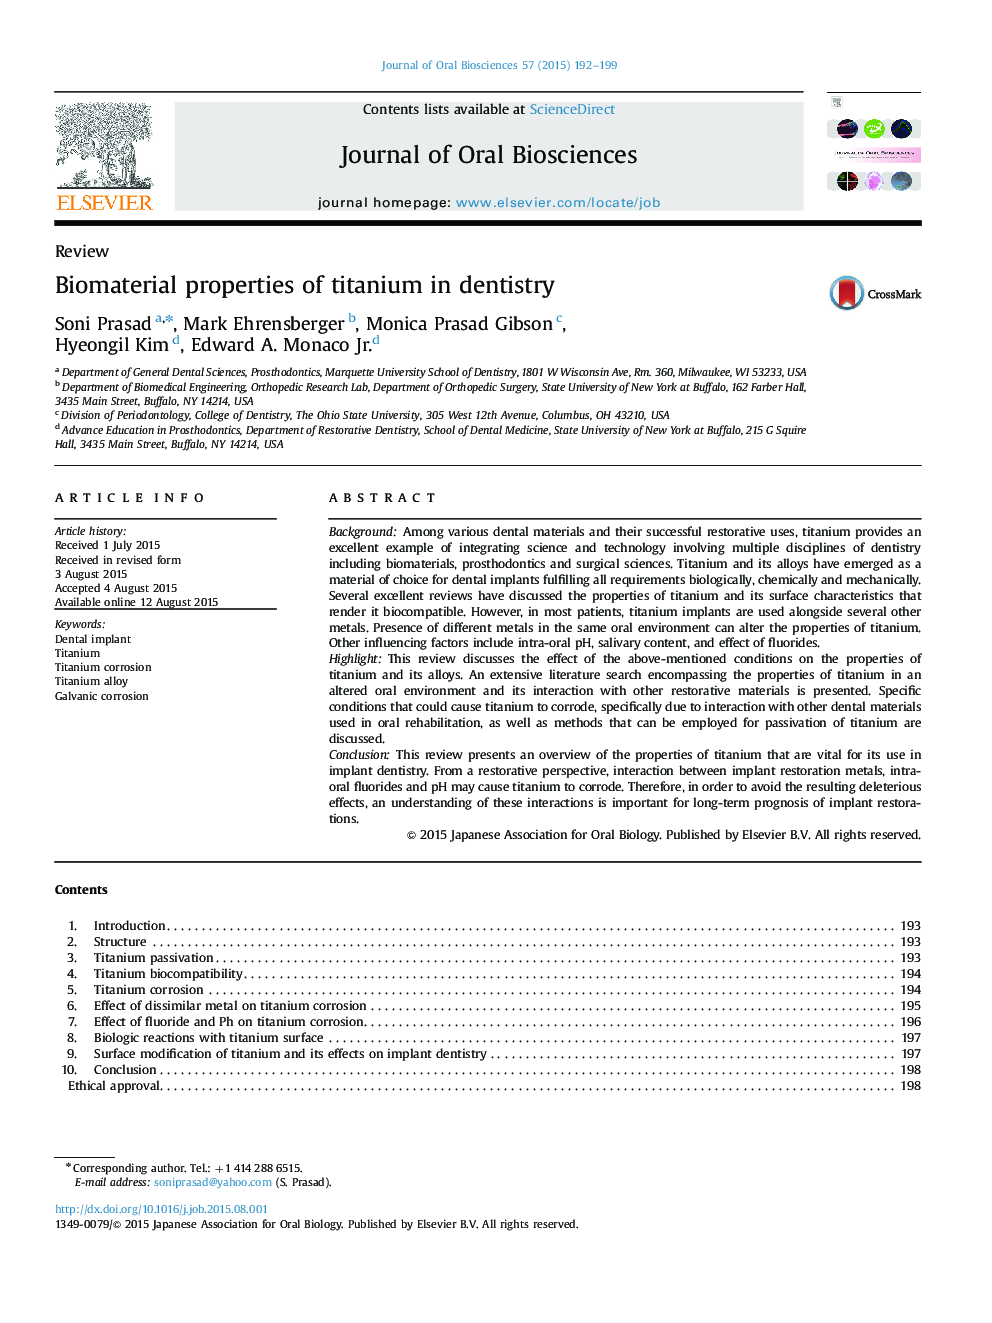 Biomaterial properties of titanium in dentistry